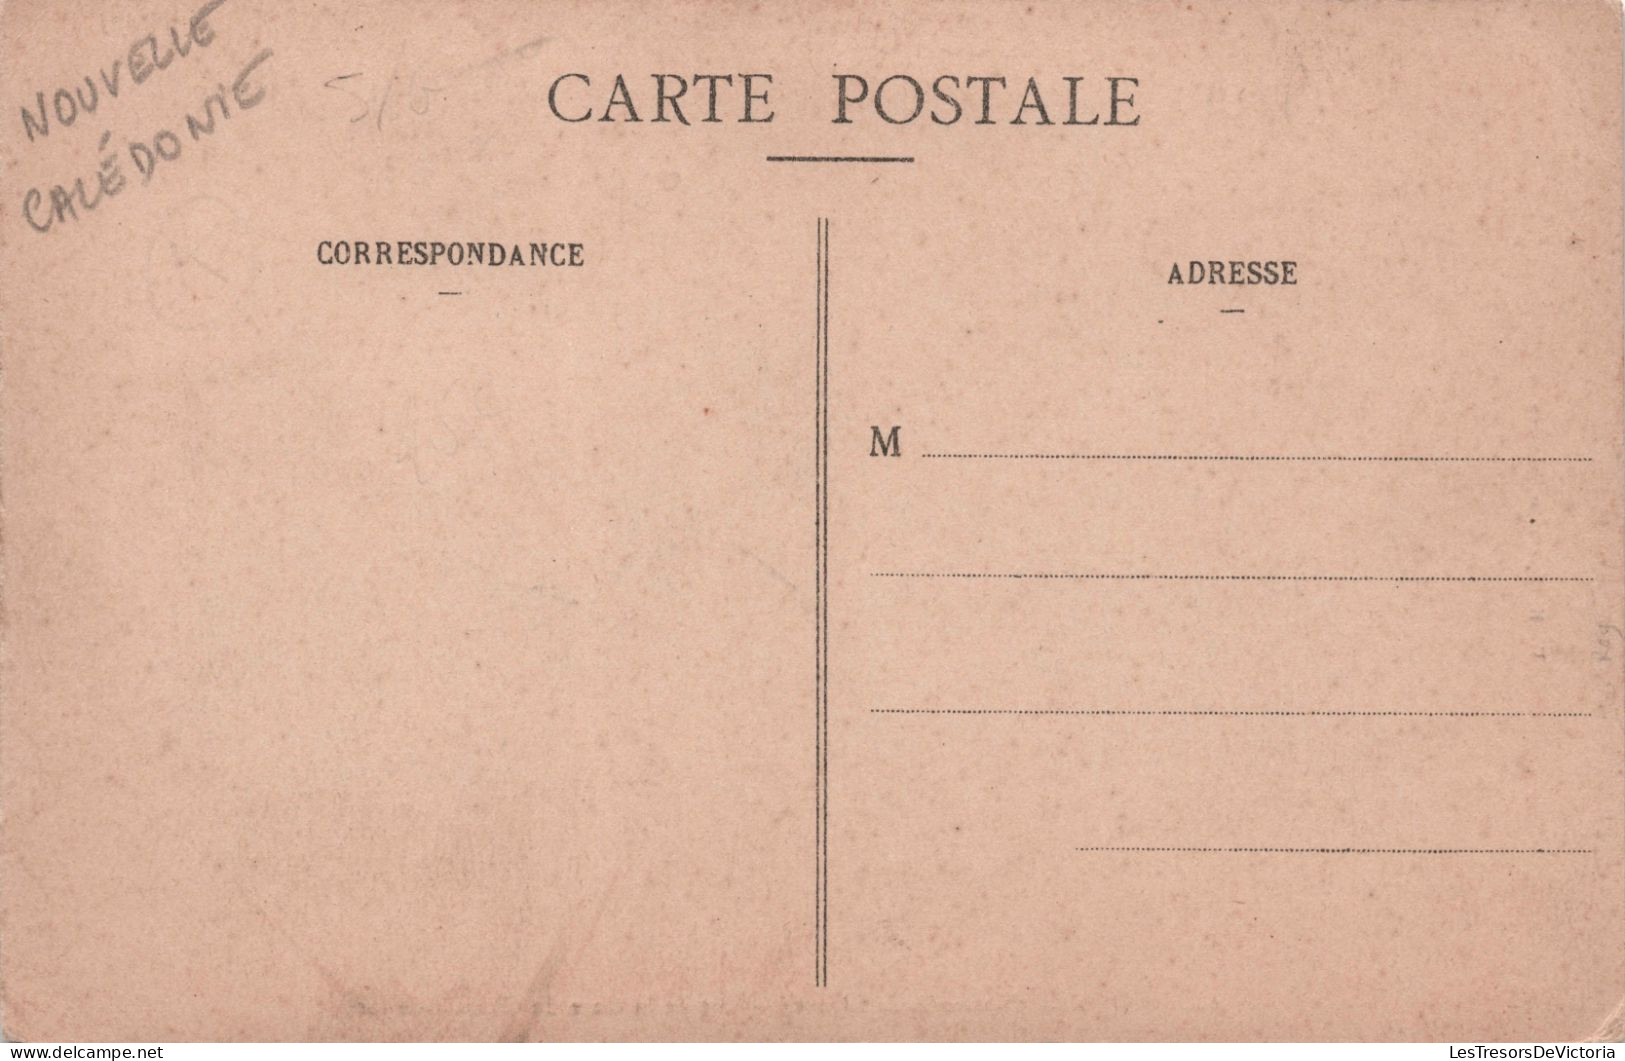 NOUVELLE CALEDONIE - Nouméa - Vue De La Gare Du Chemin De Fer - W H C Editeur - Carte Postale Ancienne - Neukaledonien